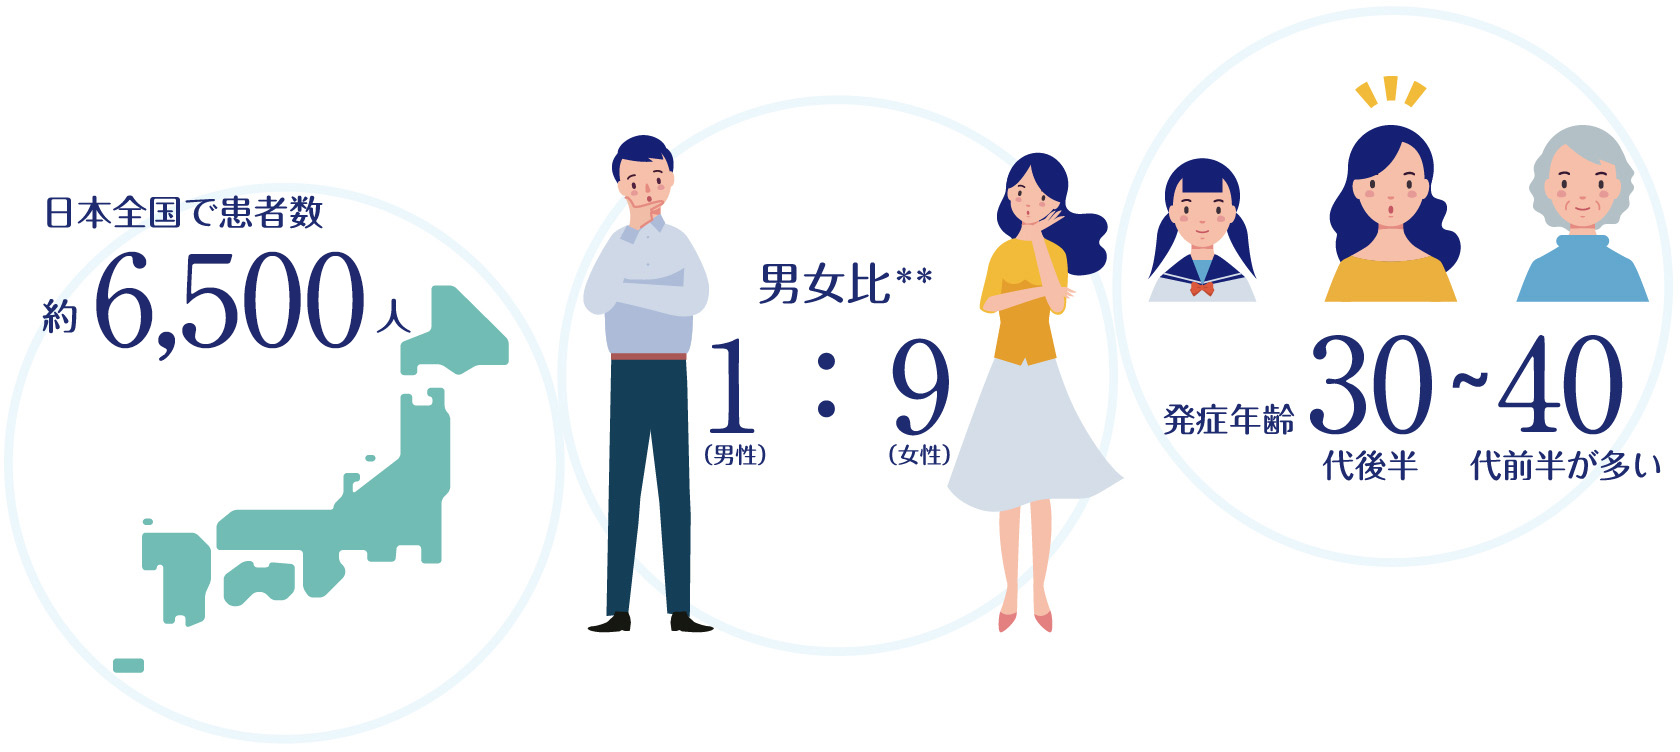 イメージ図。日本全国で患者数約6,500人。男女比男性1:女性9（**）。発症年齢30代後半～40代前半が多い。